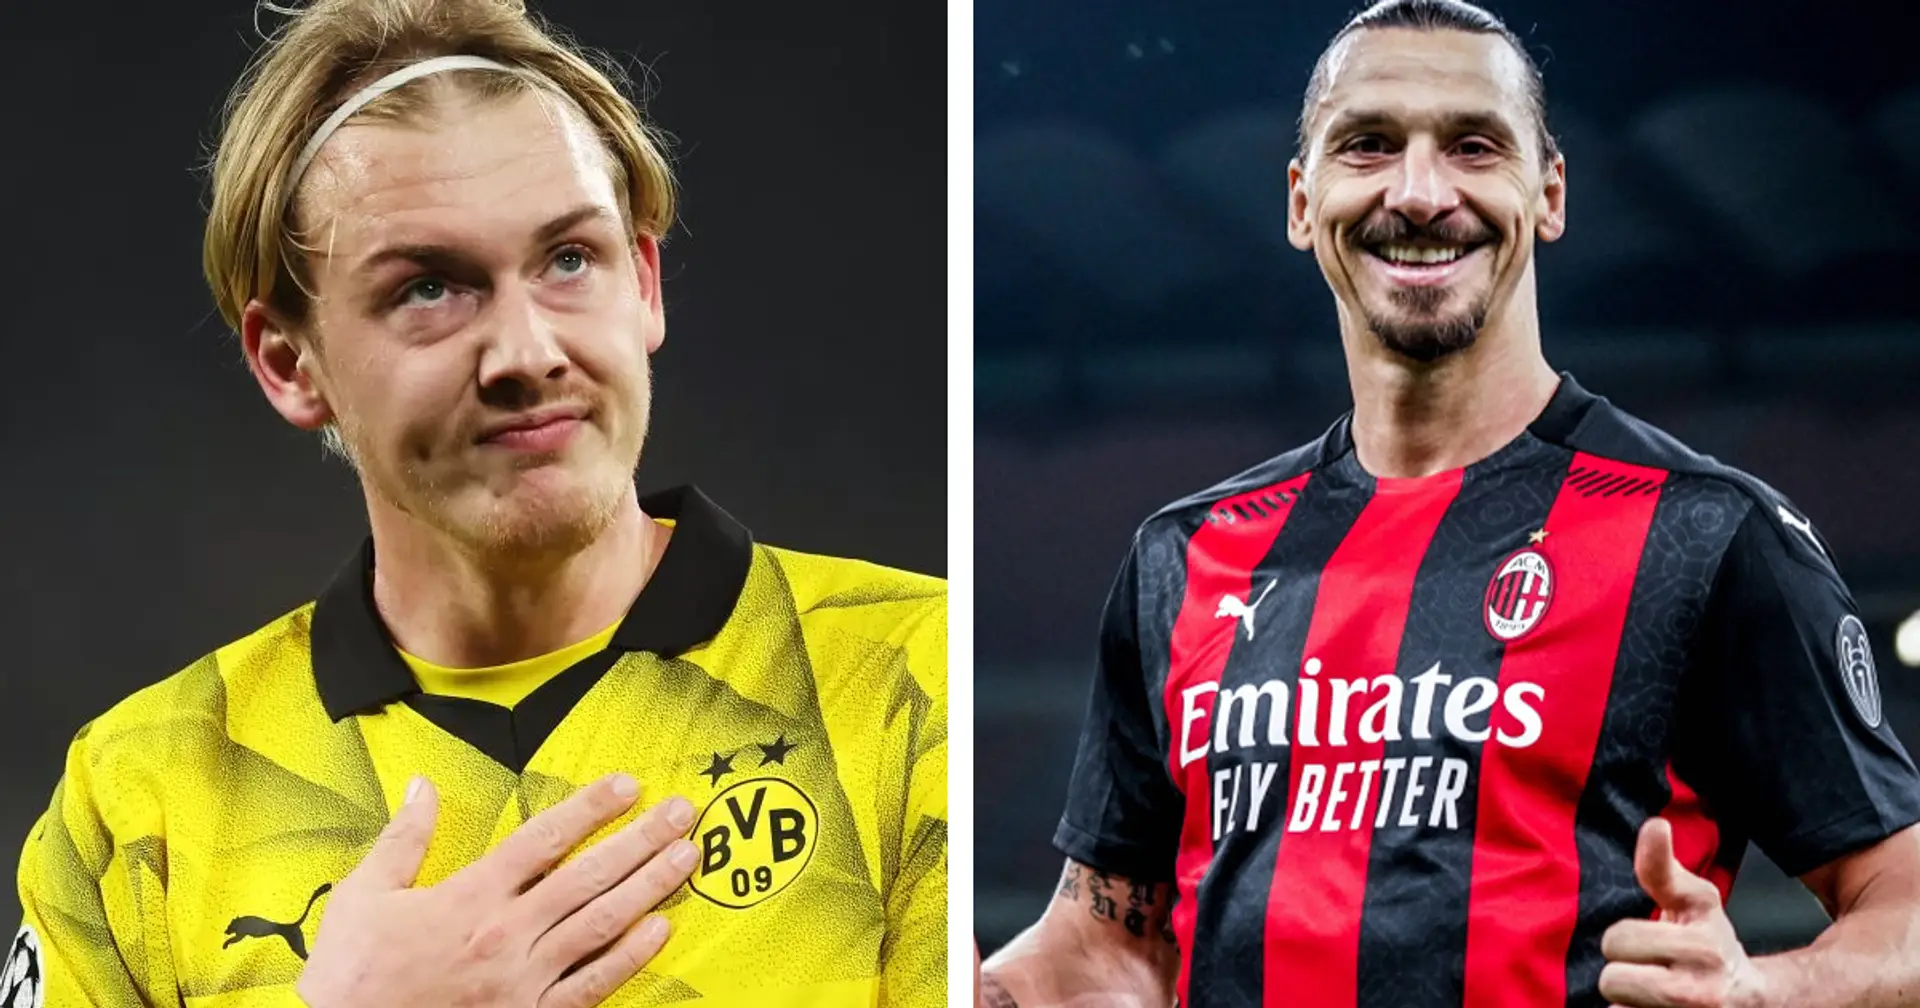 Brandt schwärmt von 2 Spielern: Von Zlatan Ibrahimovic und einem Profi, den er als Mini-Zlatan bezeichnet